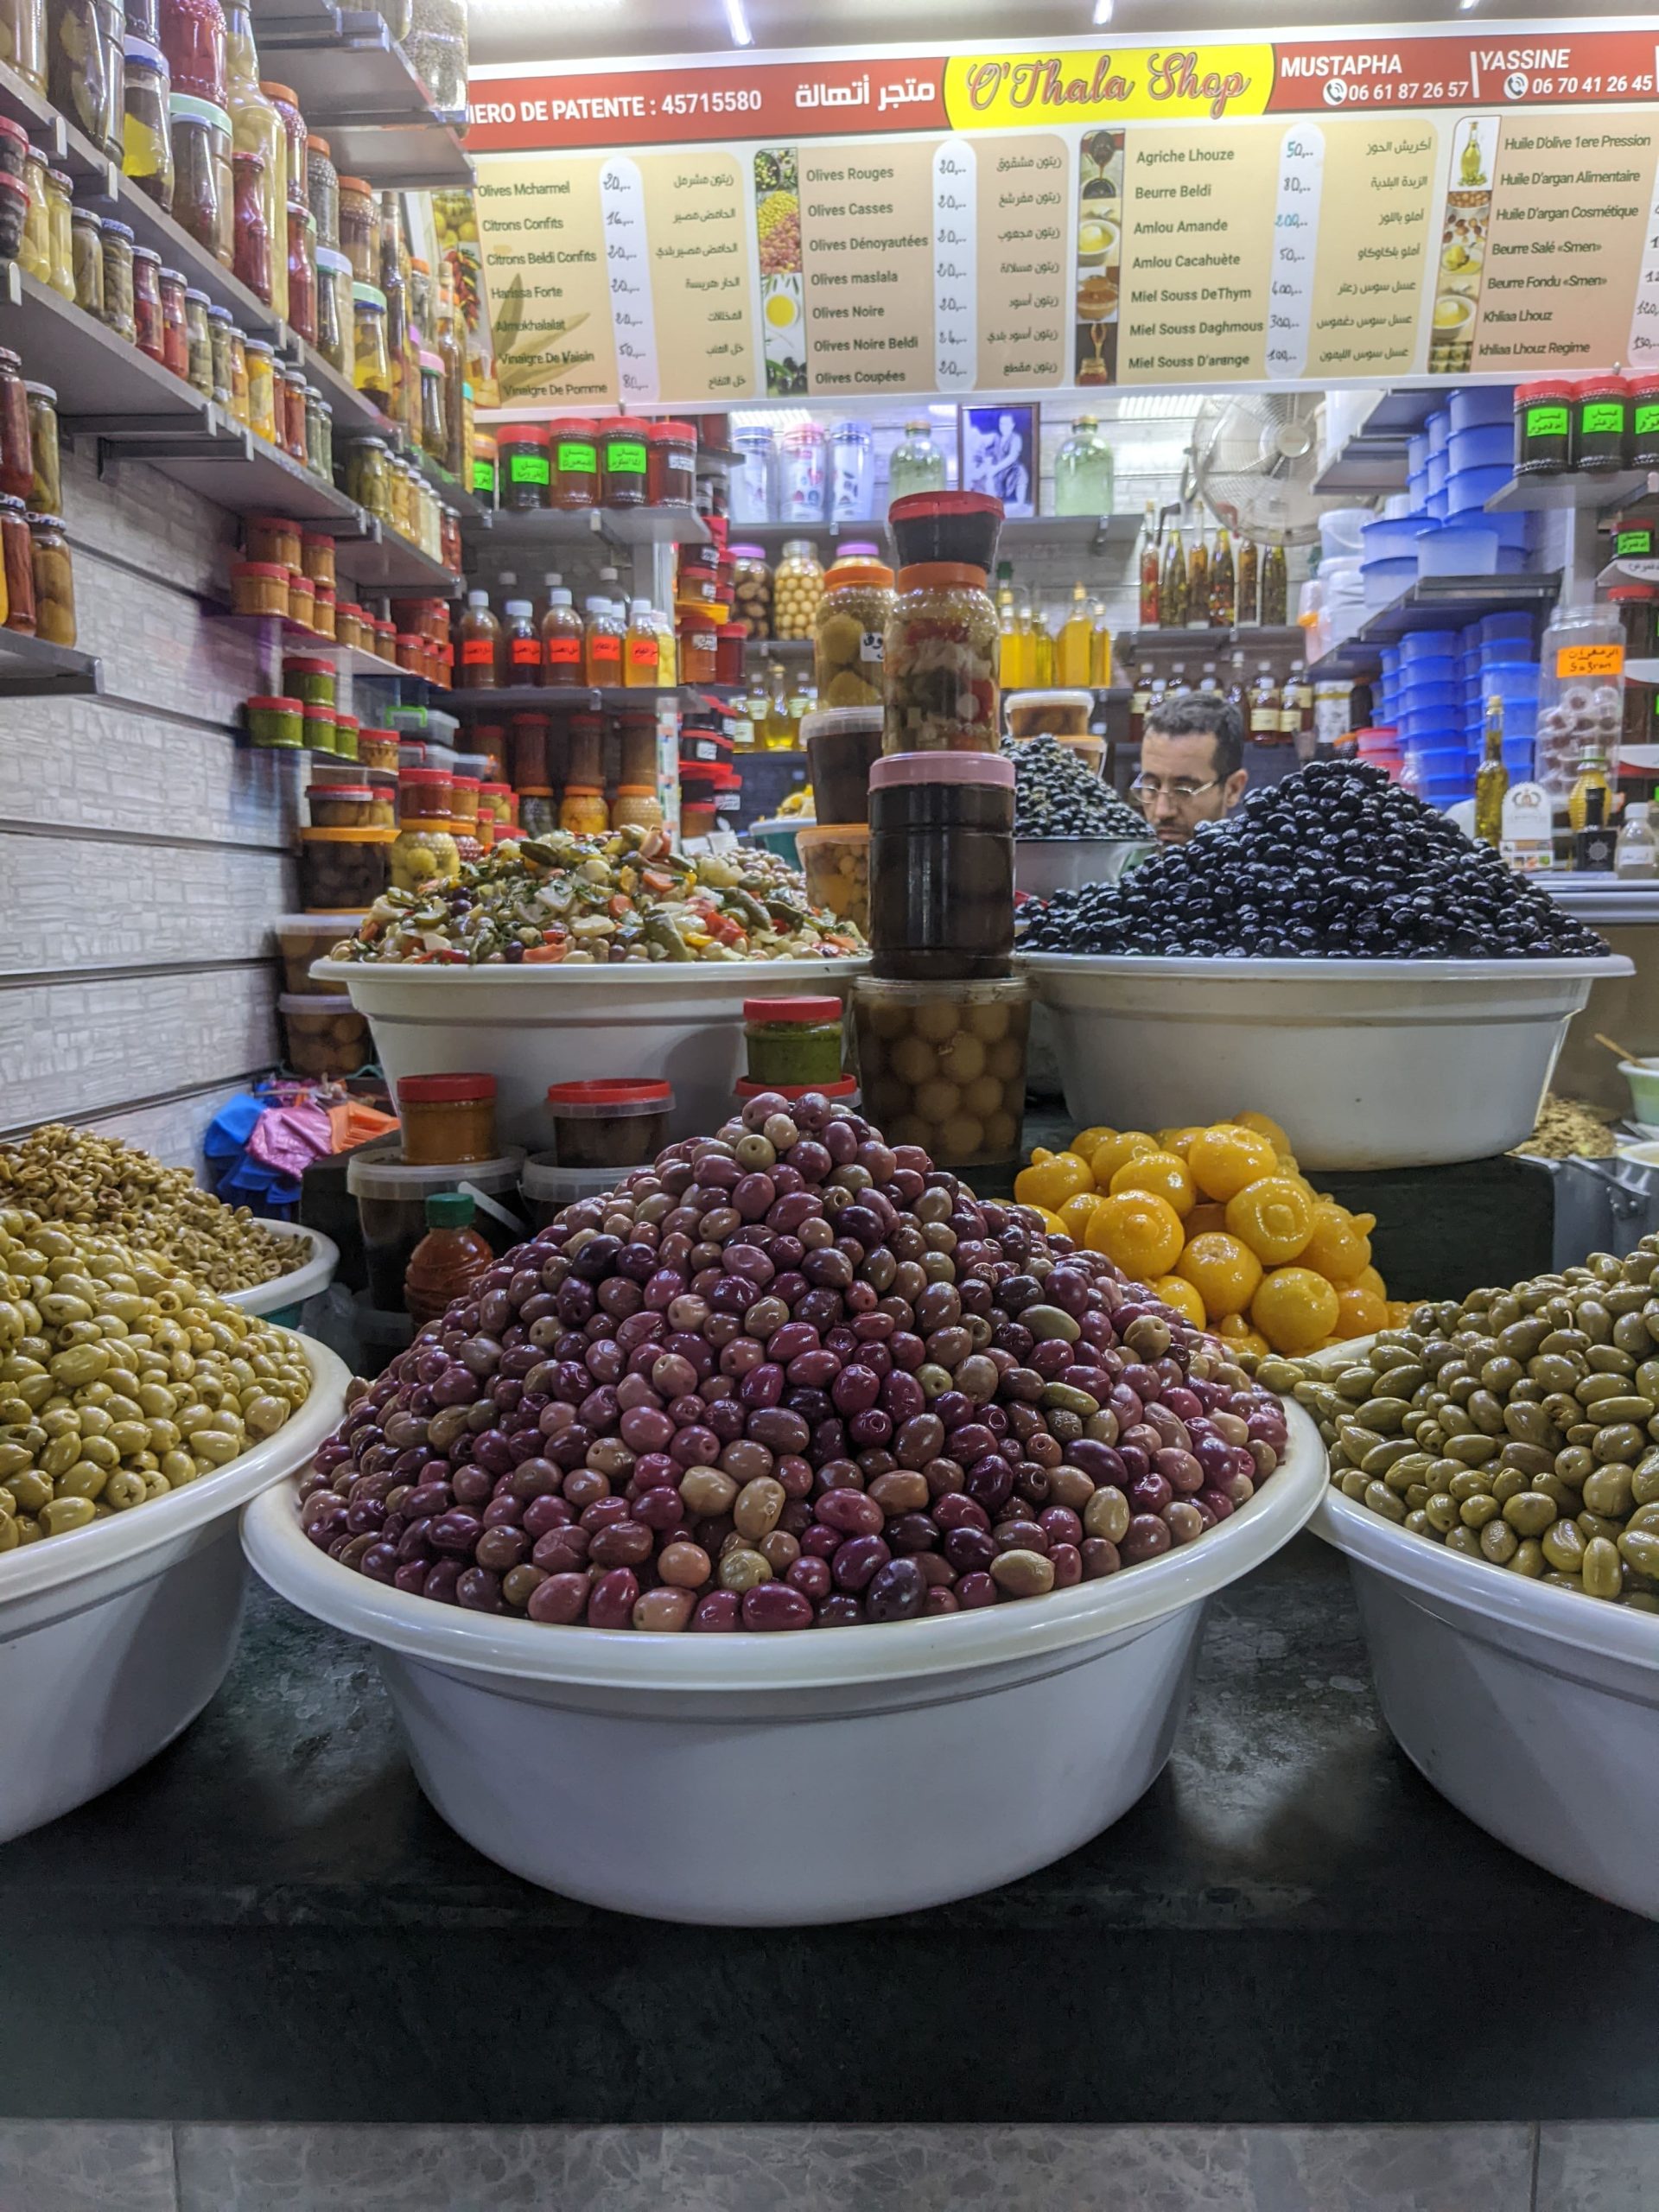 Predavači olív v Maroku.